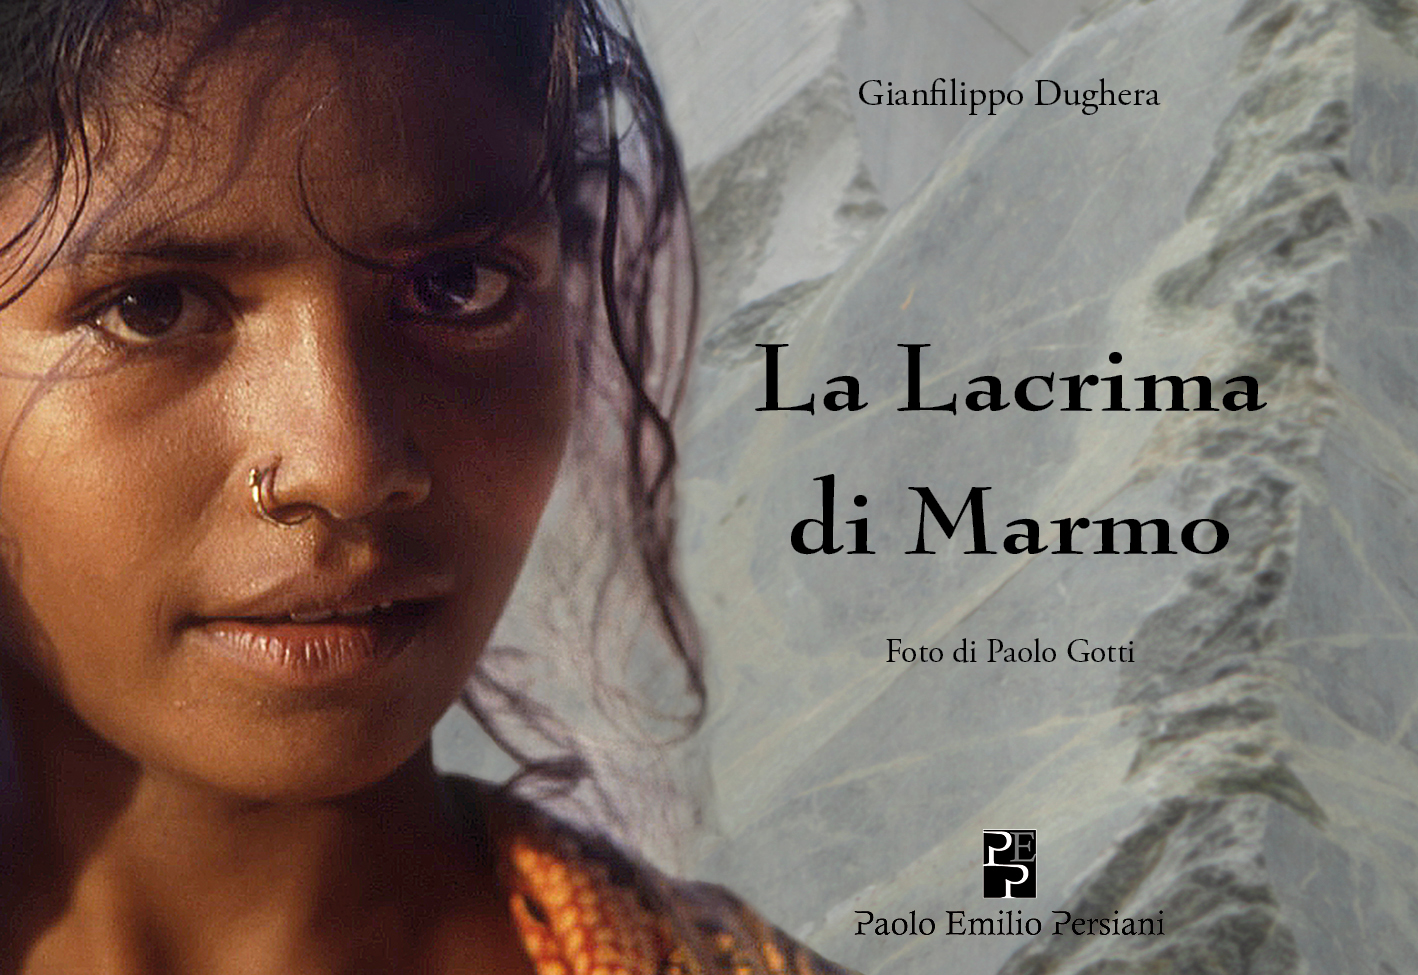 Presentazione del libro “La Lacrima di Marmo” a Forlì